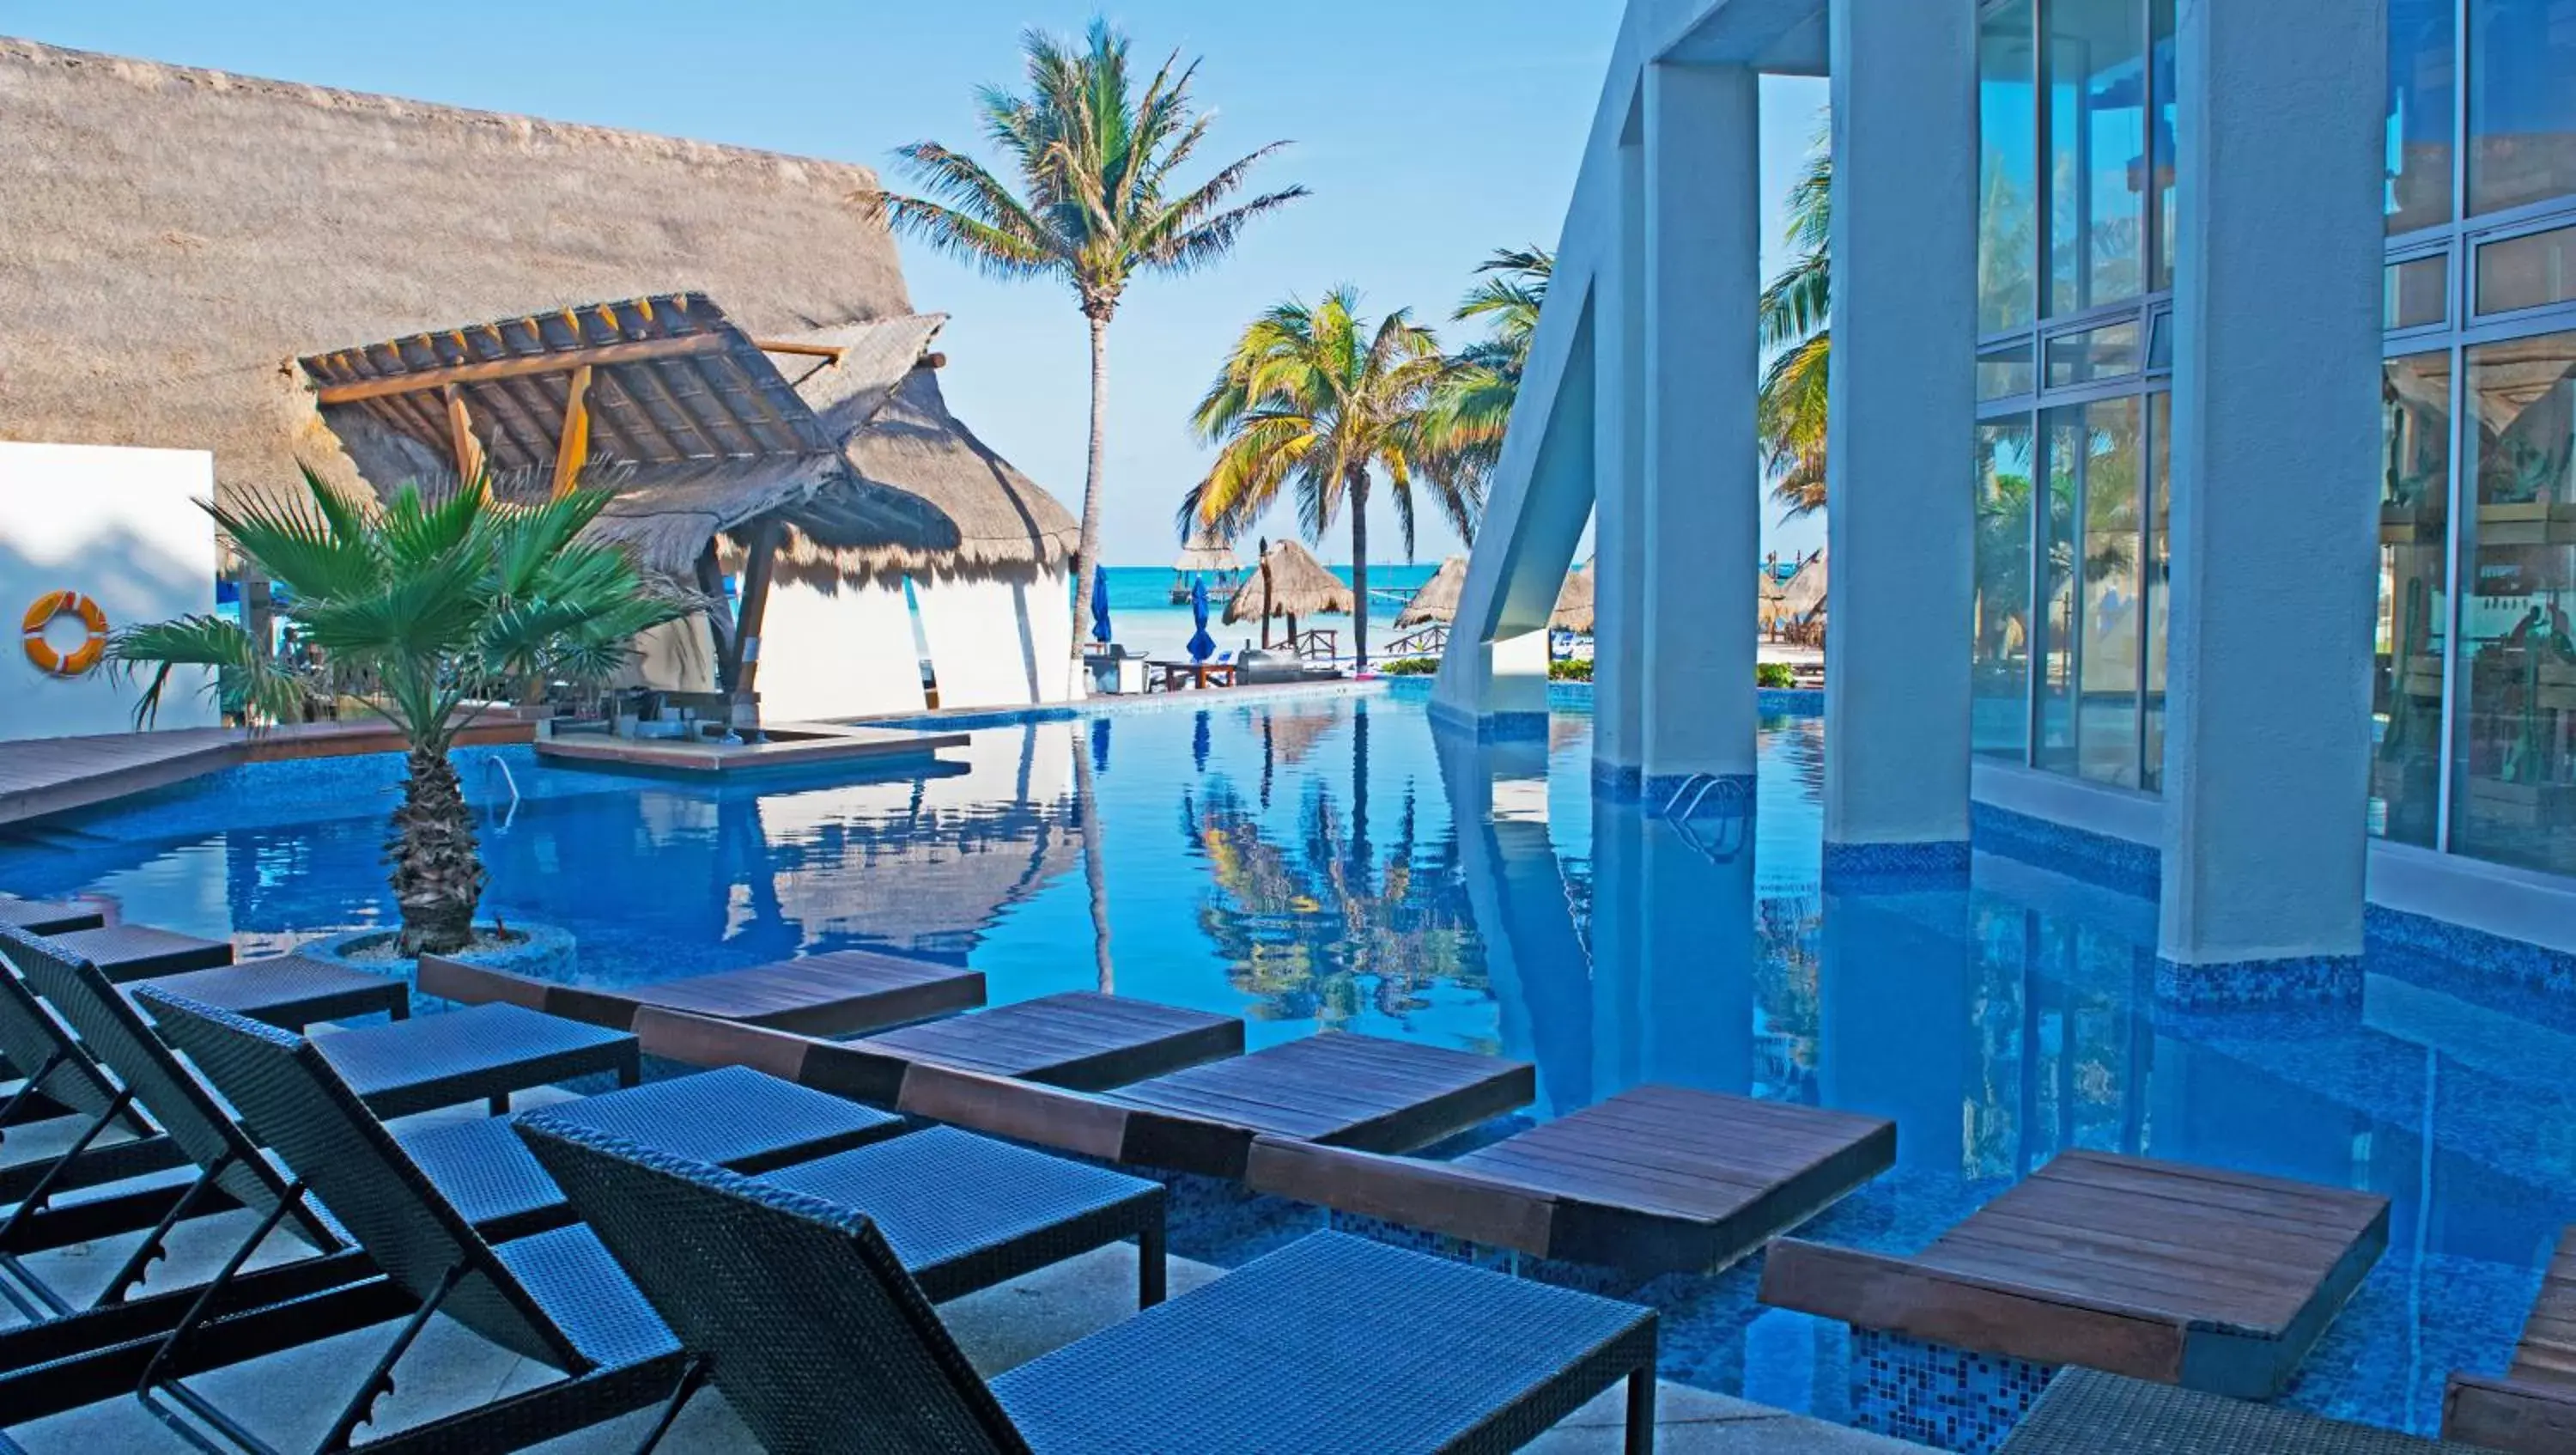 Swimming pool in Mia Reef Isla Mujeres Cancun All Inclusive Resort